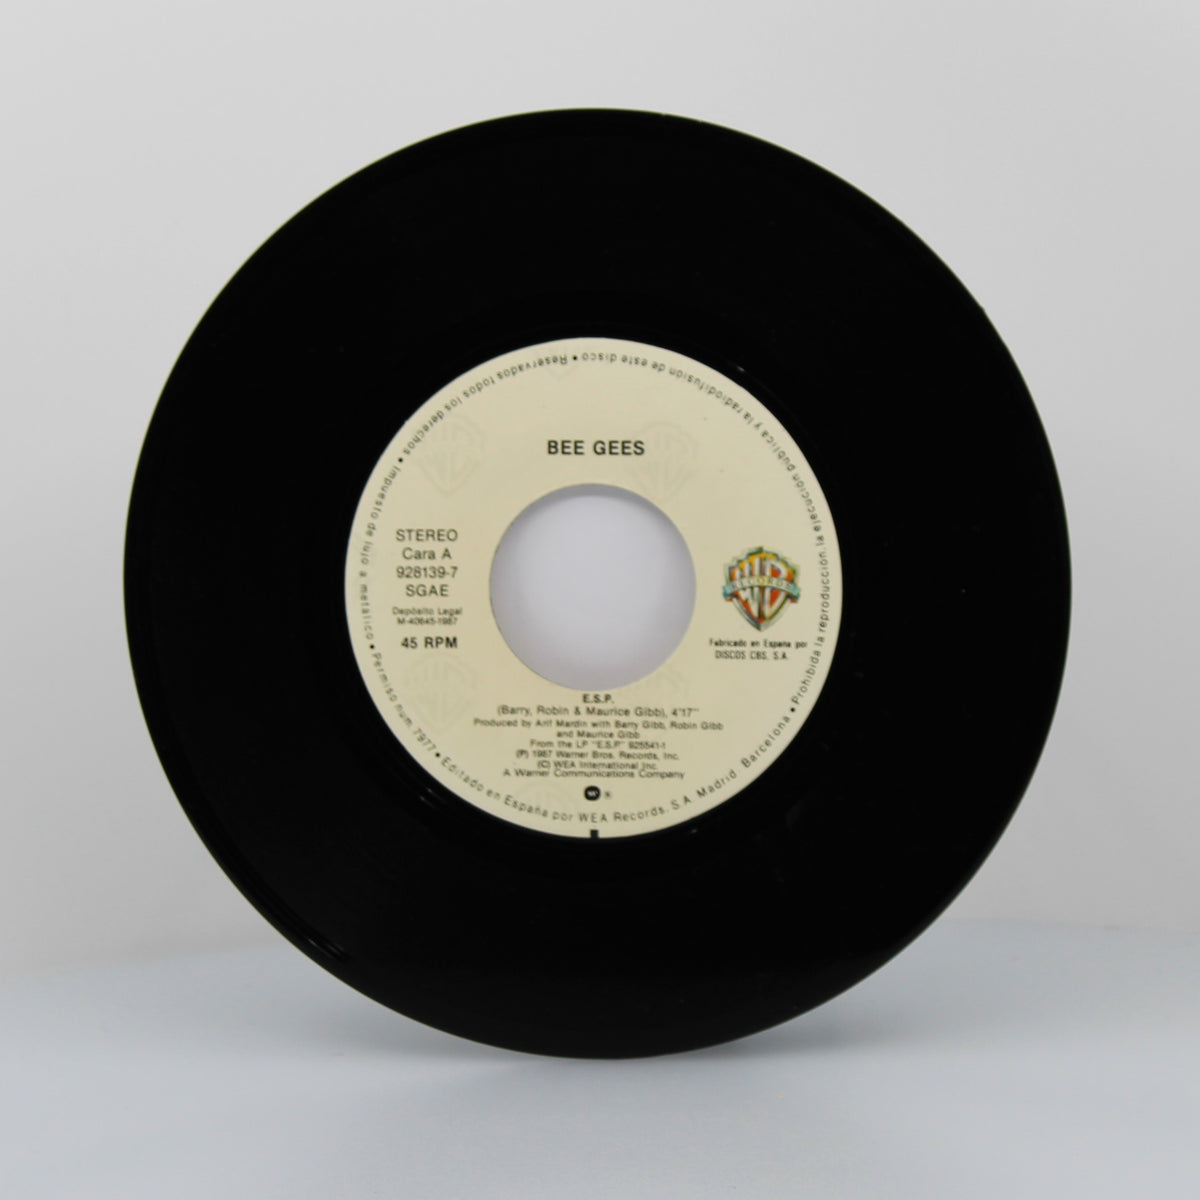 Bee Gees - E.S.P., Vinyl 7&quot; Single 45Rpm, Spain 1987